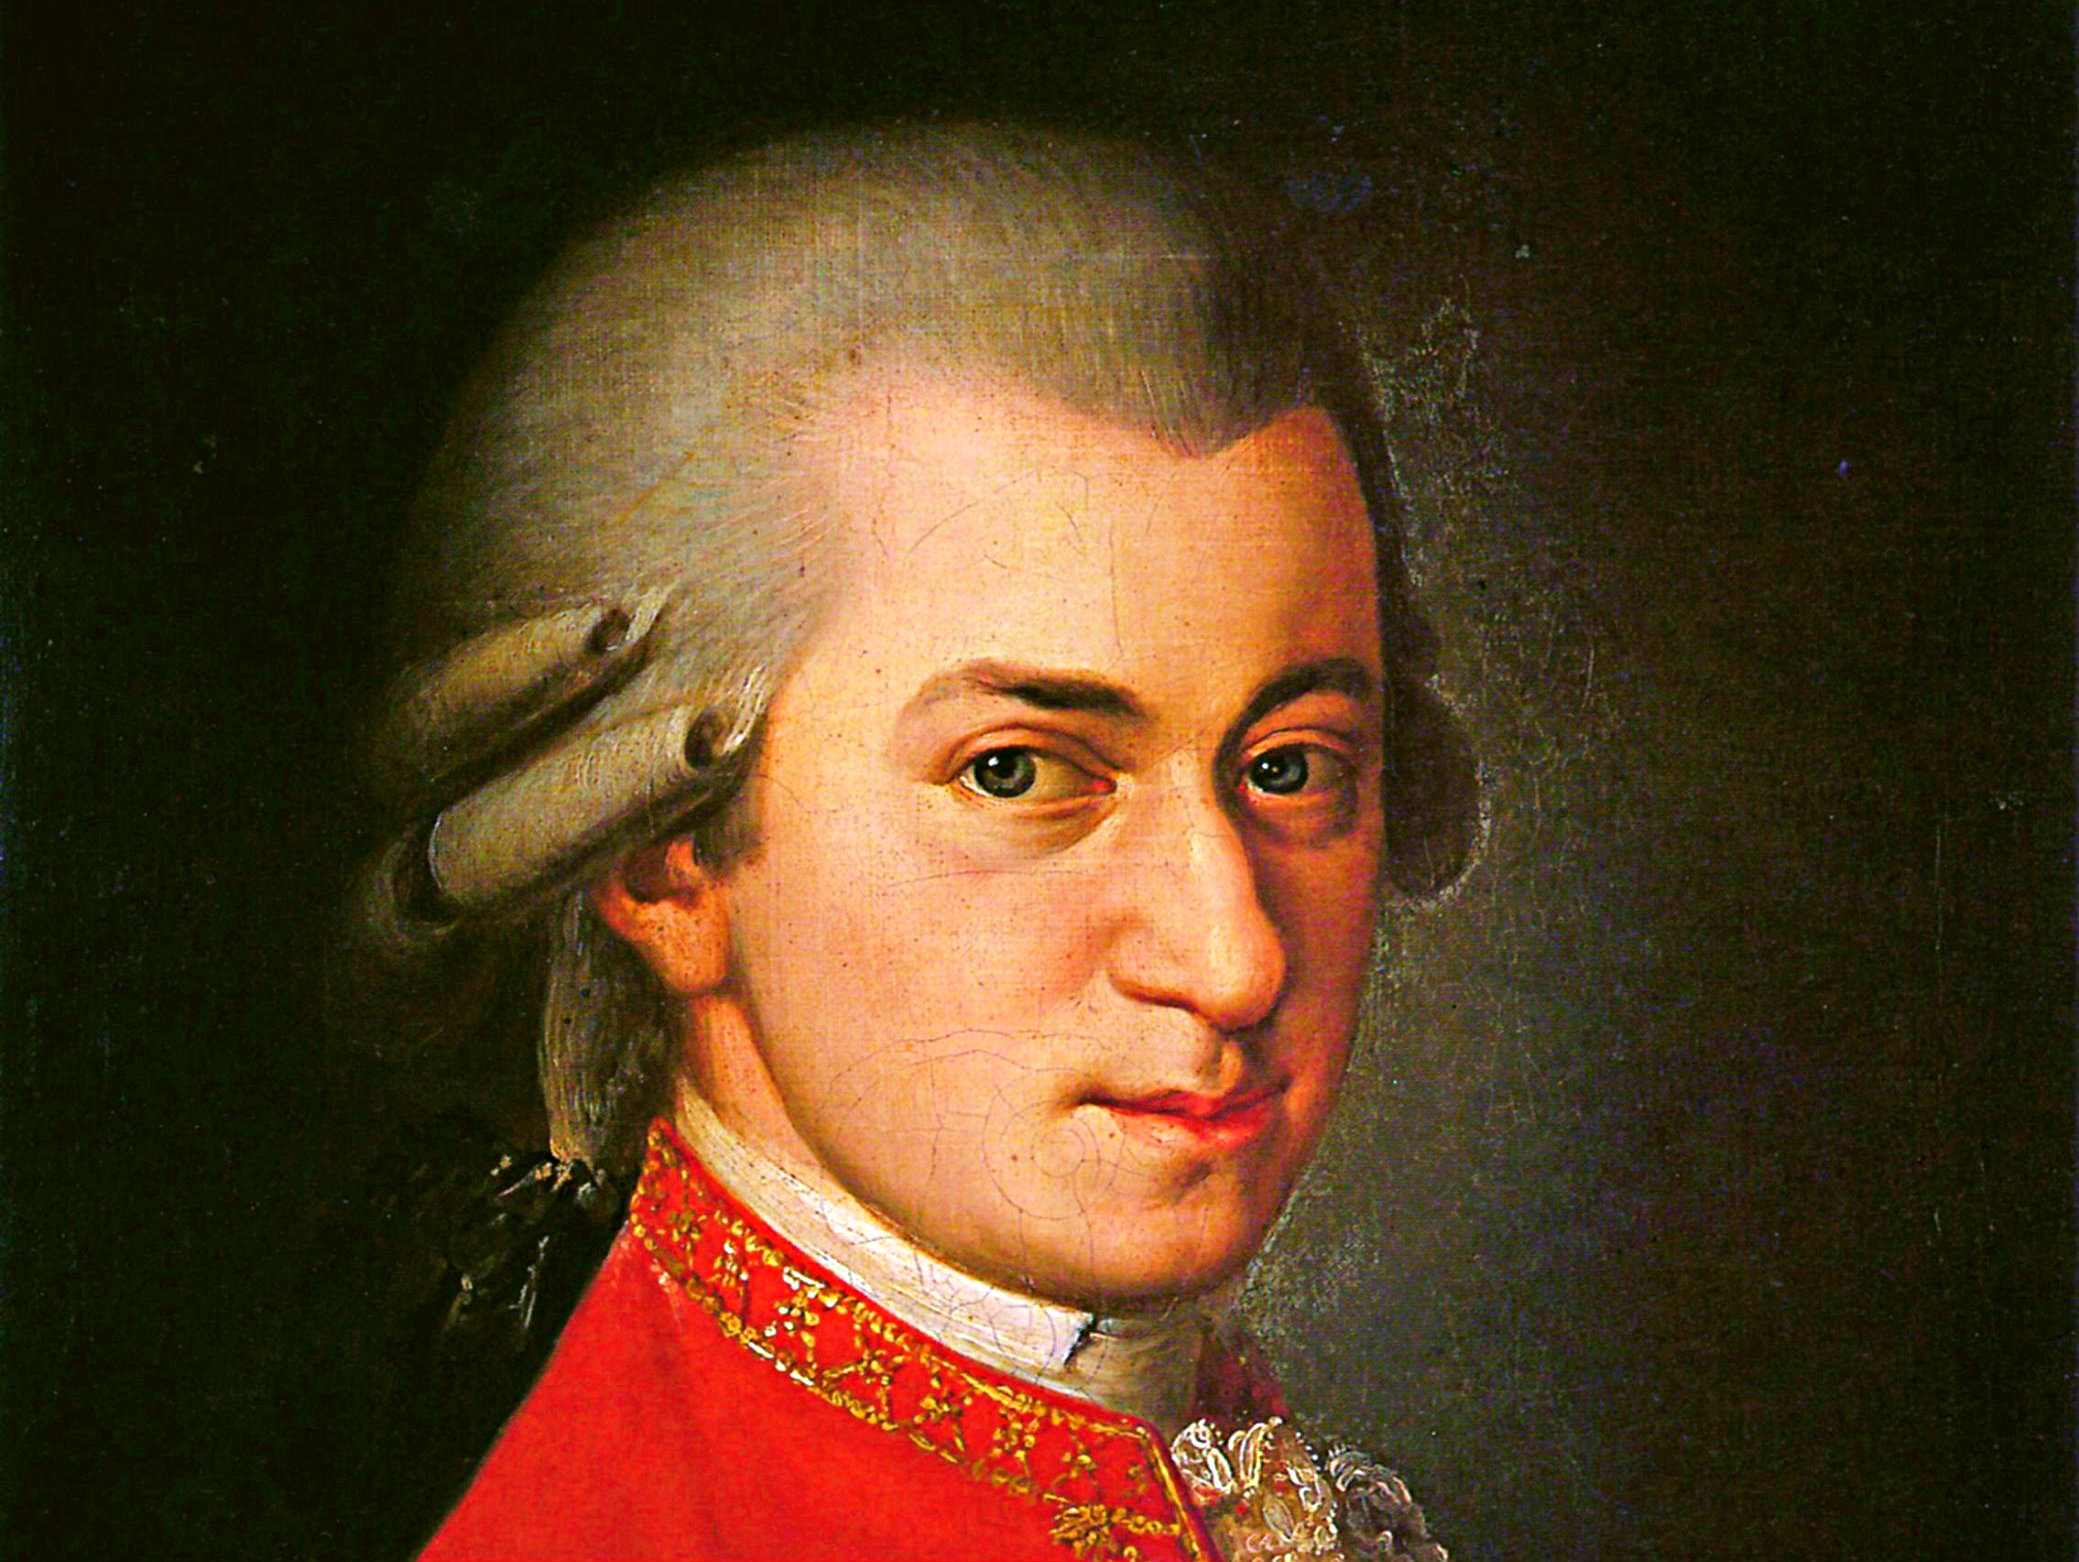 &lt;p&gt;Wolfgang Amadeus Mozart&lt;/p&gt;
